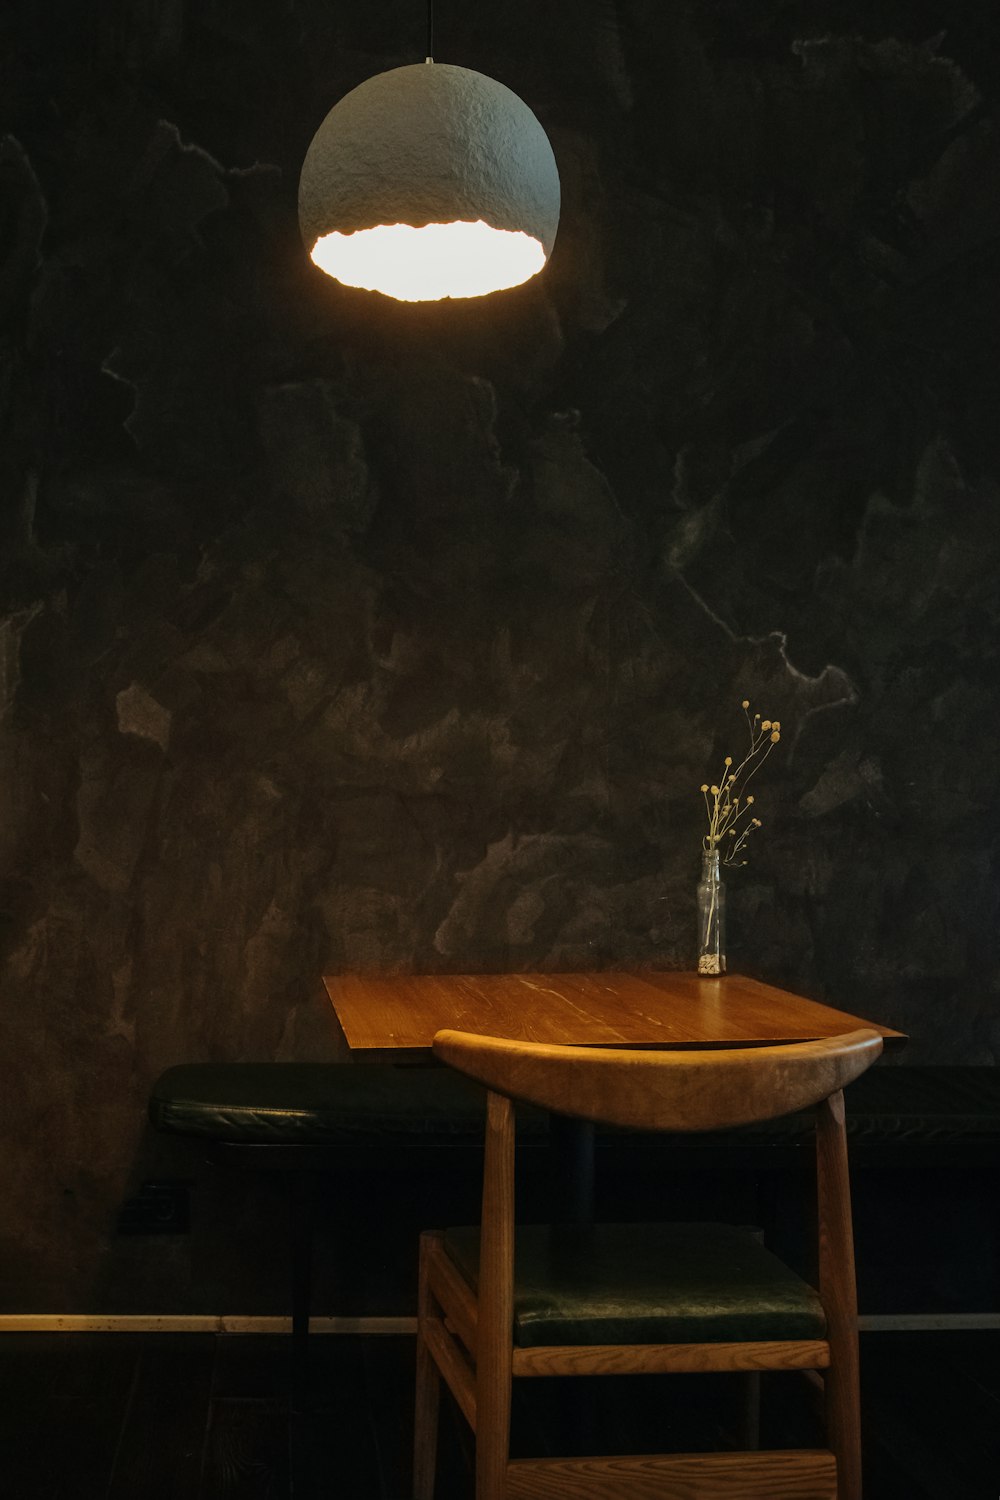 a light on a table